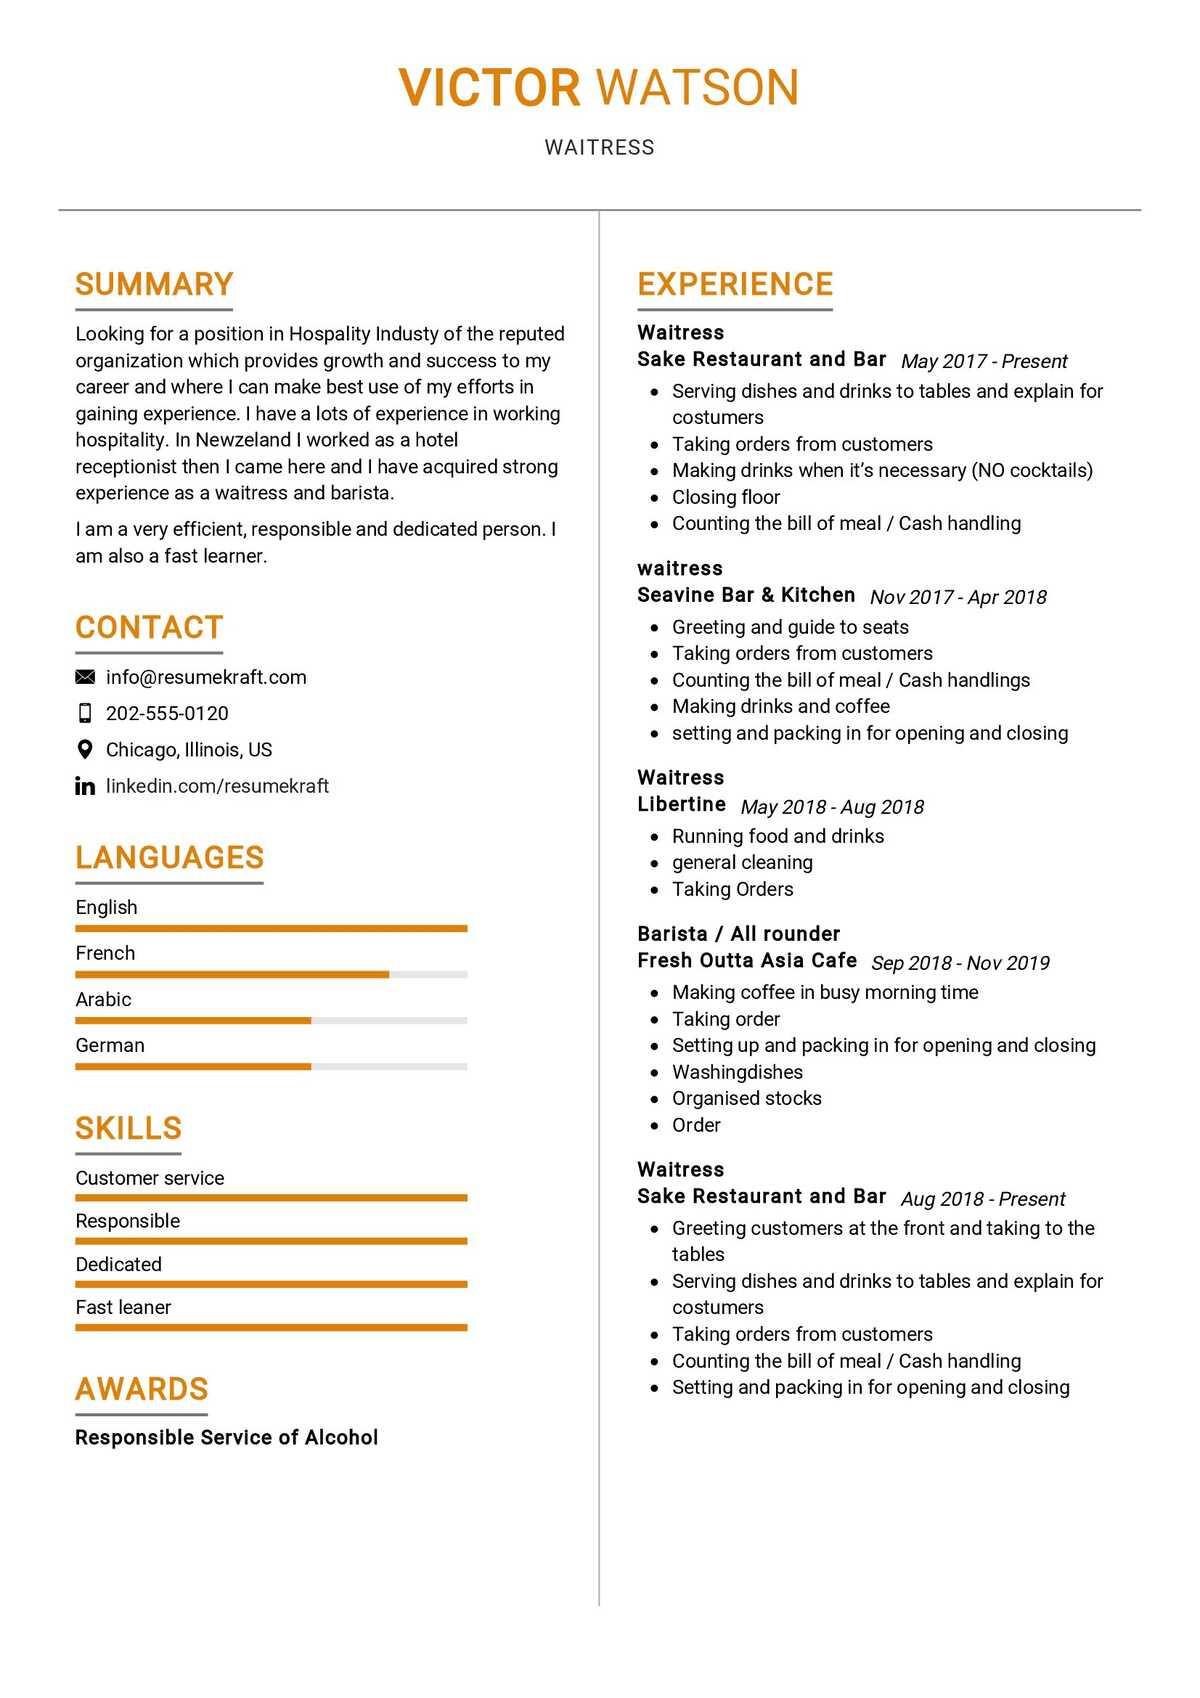 Free Sample Resume for Waitress Position Waitress Resume Sample 2021 Writing Guide & Tips- Resumekraft